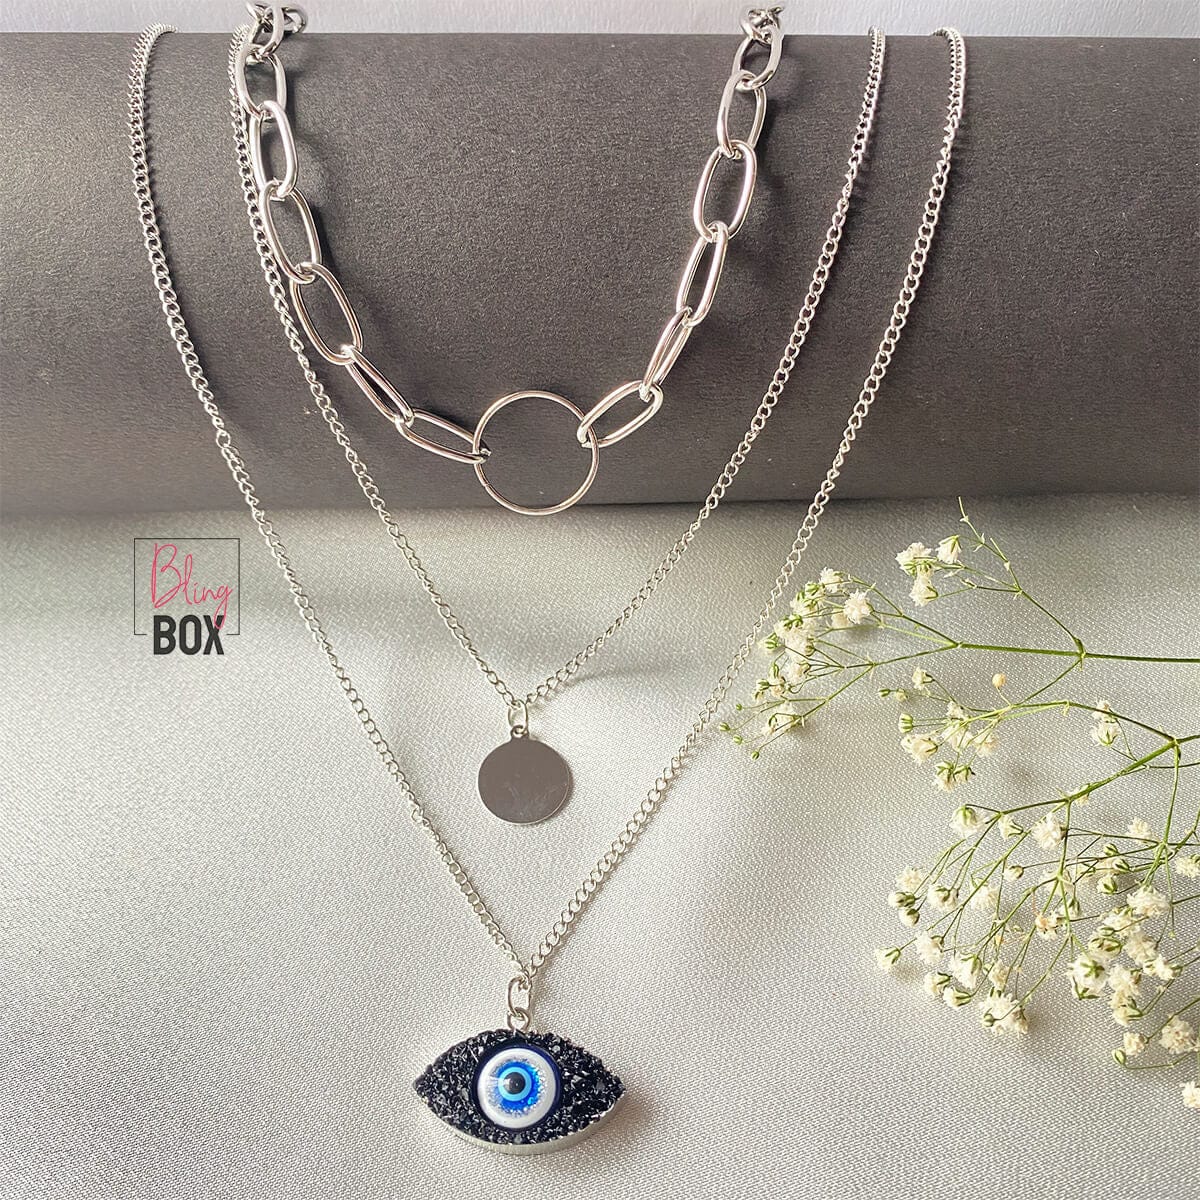 Evil eye necklace – soulworks.co